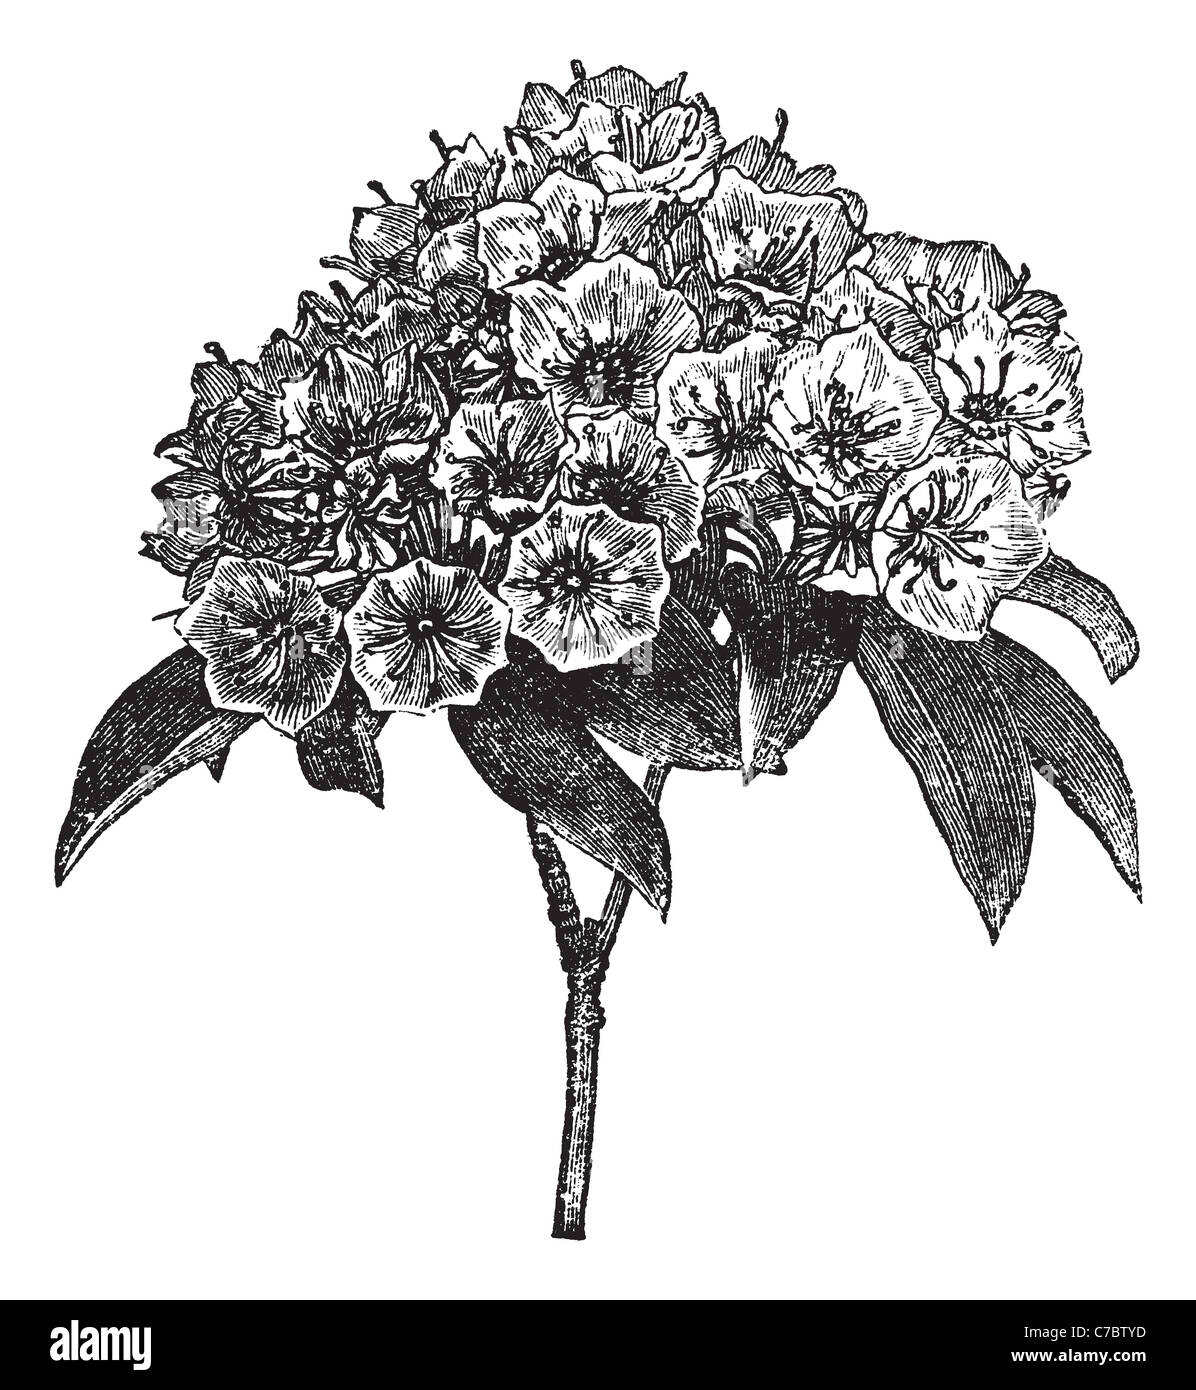 Kalmia latifolia or Clamoun, vintage engraving. Old engraved illustration of Kalmia latifolia isolated on a white background. Stock Photo